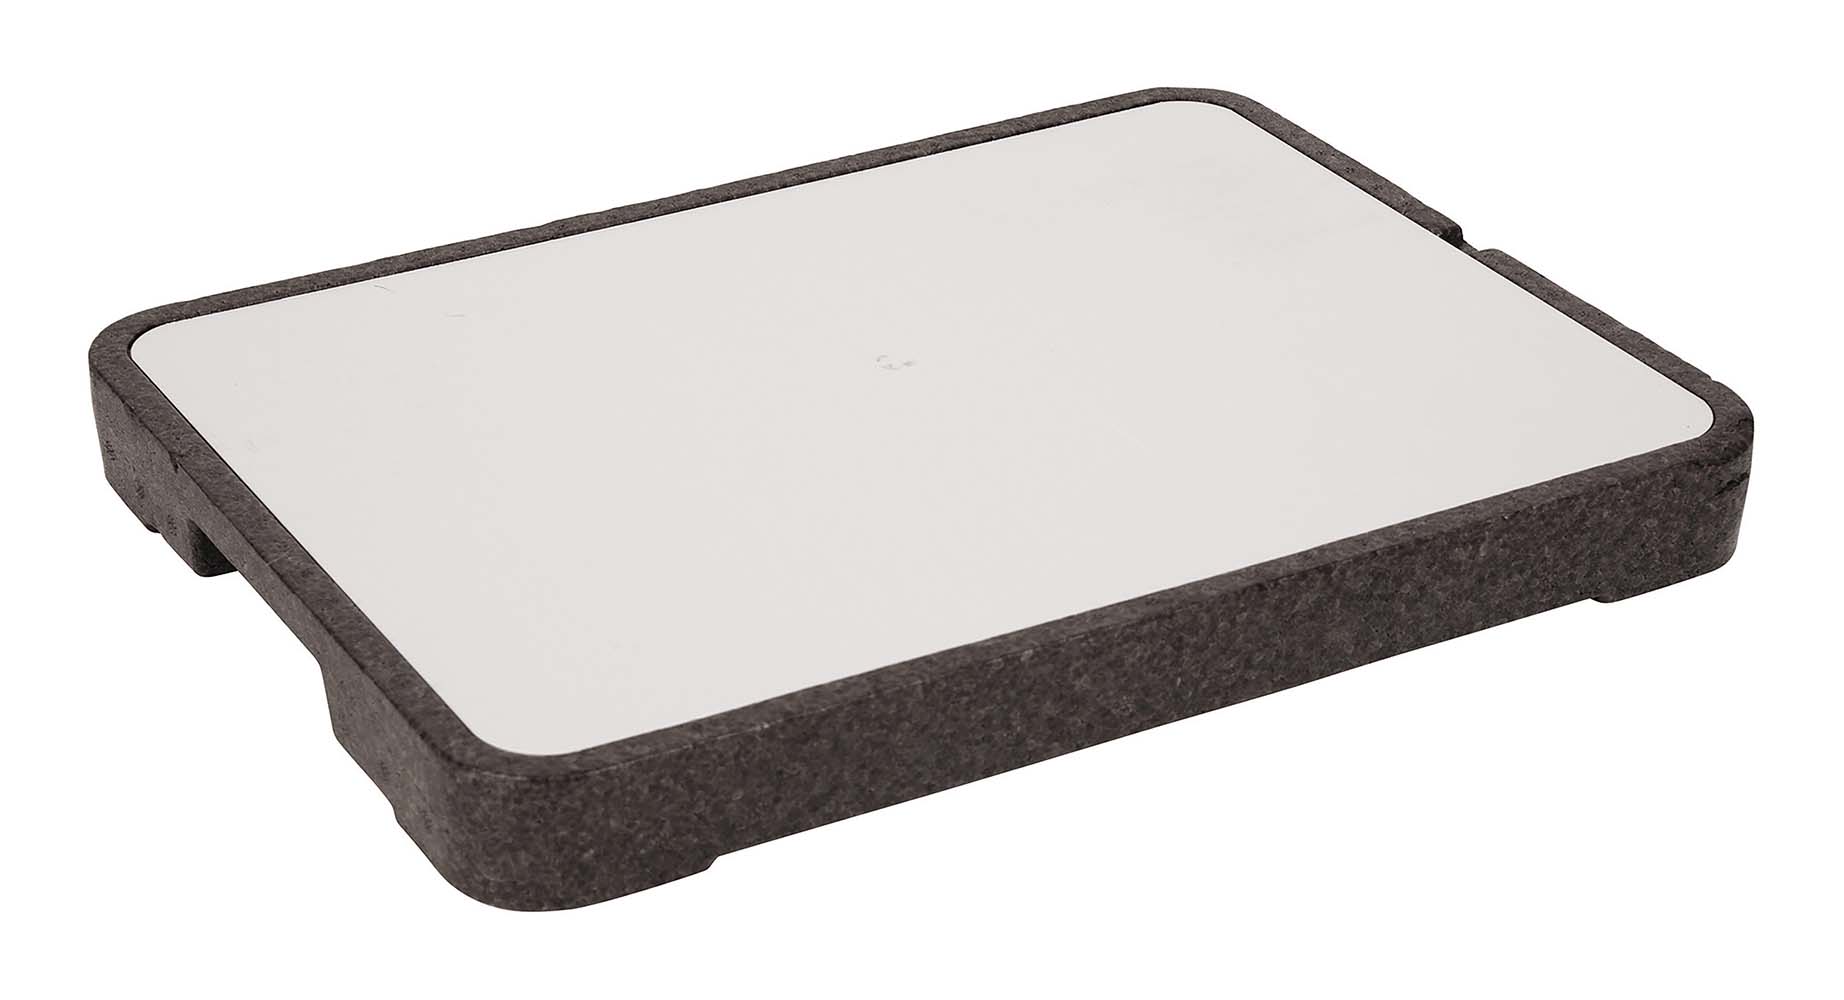 6702113 Eine praktische Kühlplatte. Dieses Tablett mit Kühlelement ist ideal, um Lebensmittel in einer warmen Umgebung zu kühlen. Lebensmittel können sowohl ohne Unterlage als auch auf Schalen, Tellern usw. darauf gelegt werden.